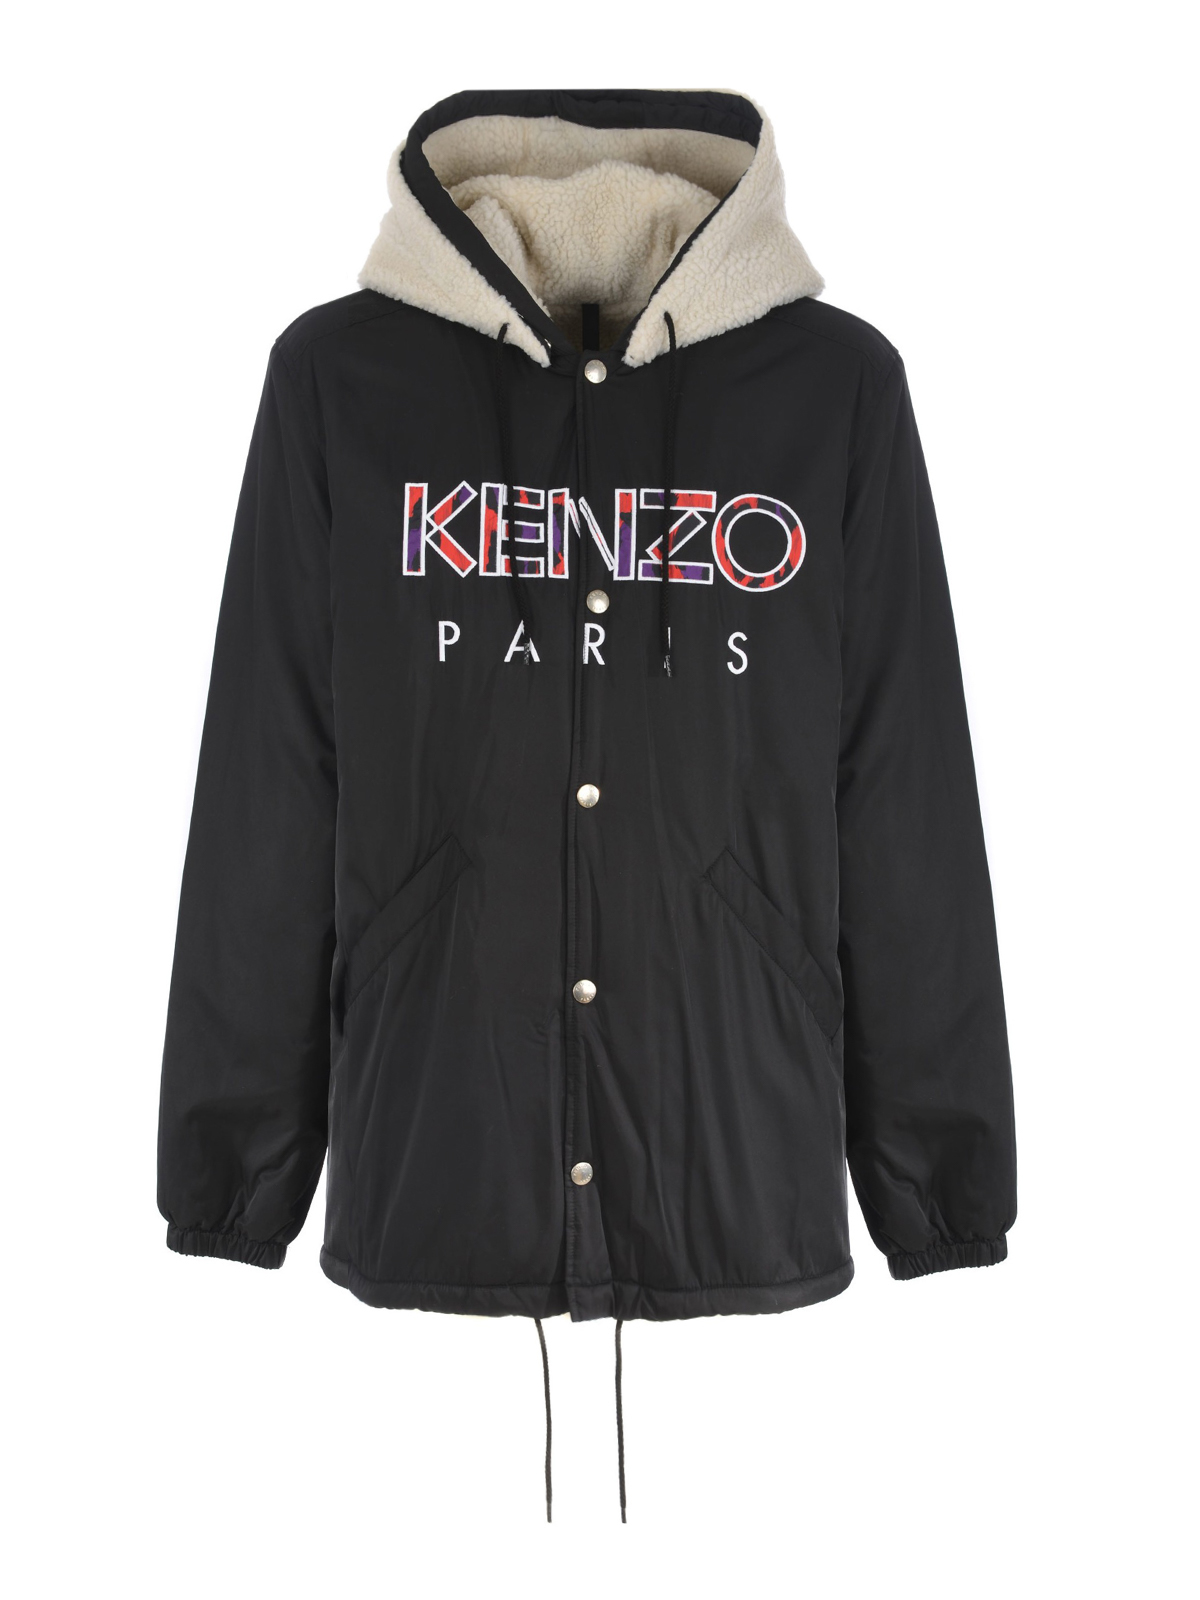 Kenzo - Kenzo Paris double hood jacket 